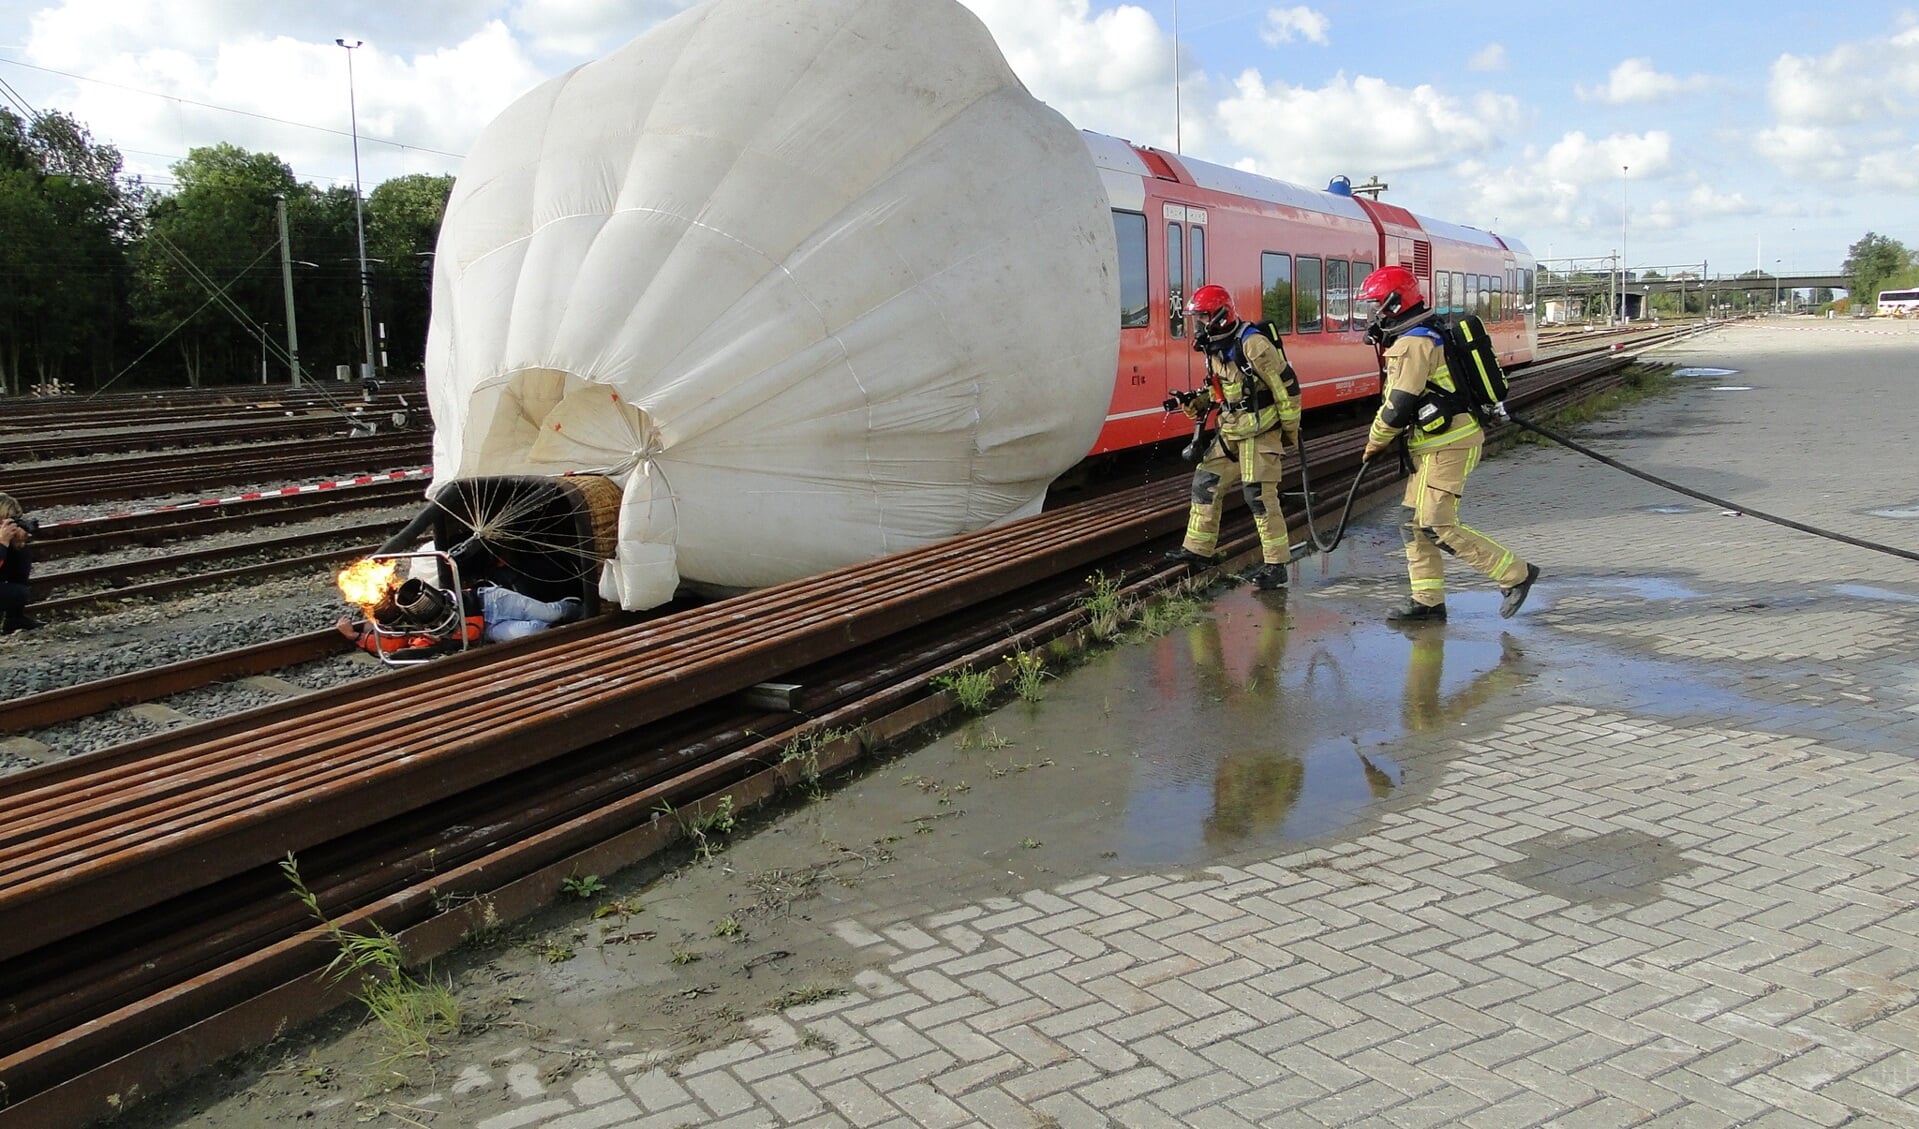 In het scenario landde de luchtballon voor een treinstel waardoor er in een klap een aantal gewonden vielen. (Foto: Pep) 